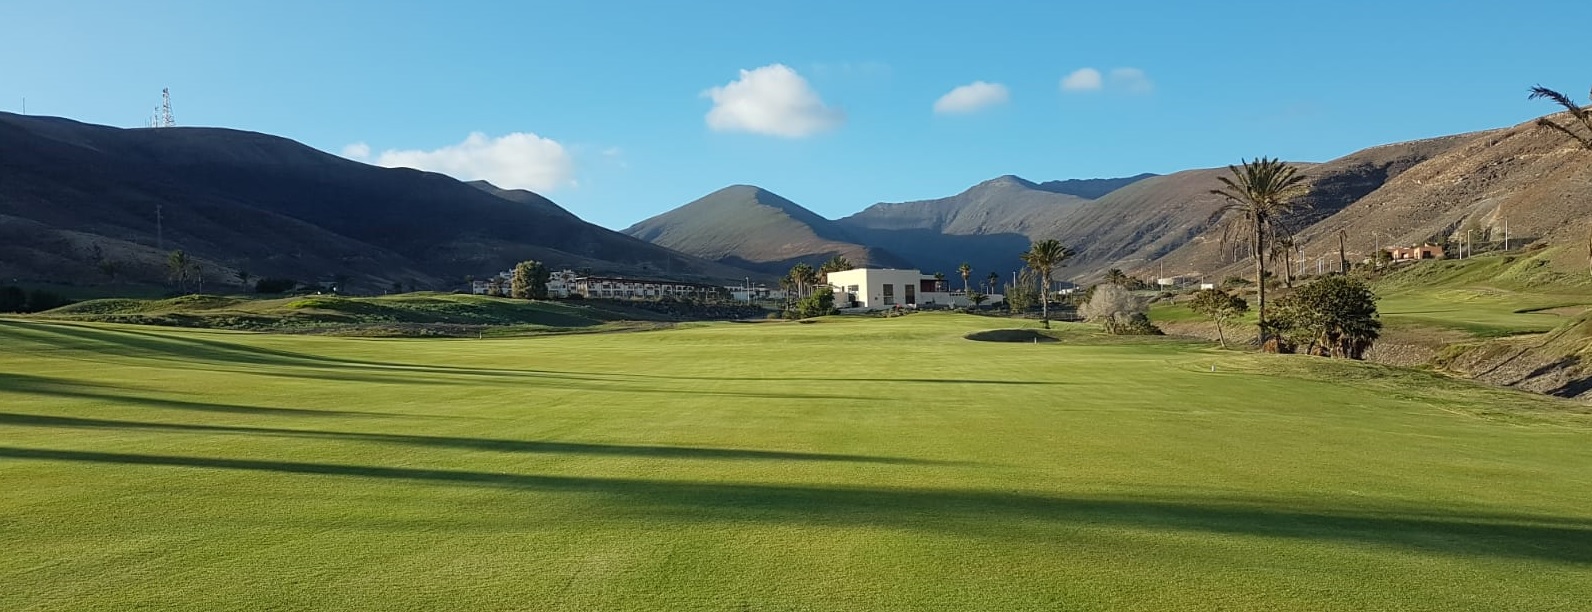 La Jandià Golf Club - Fuerteventura